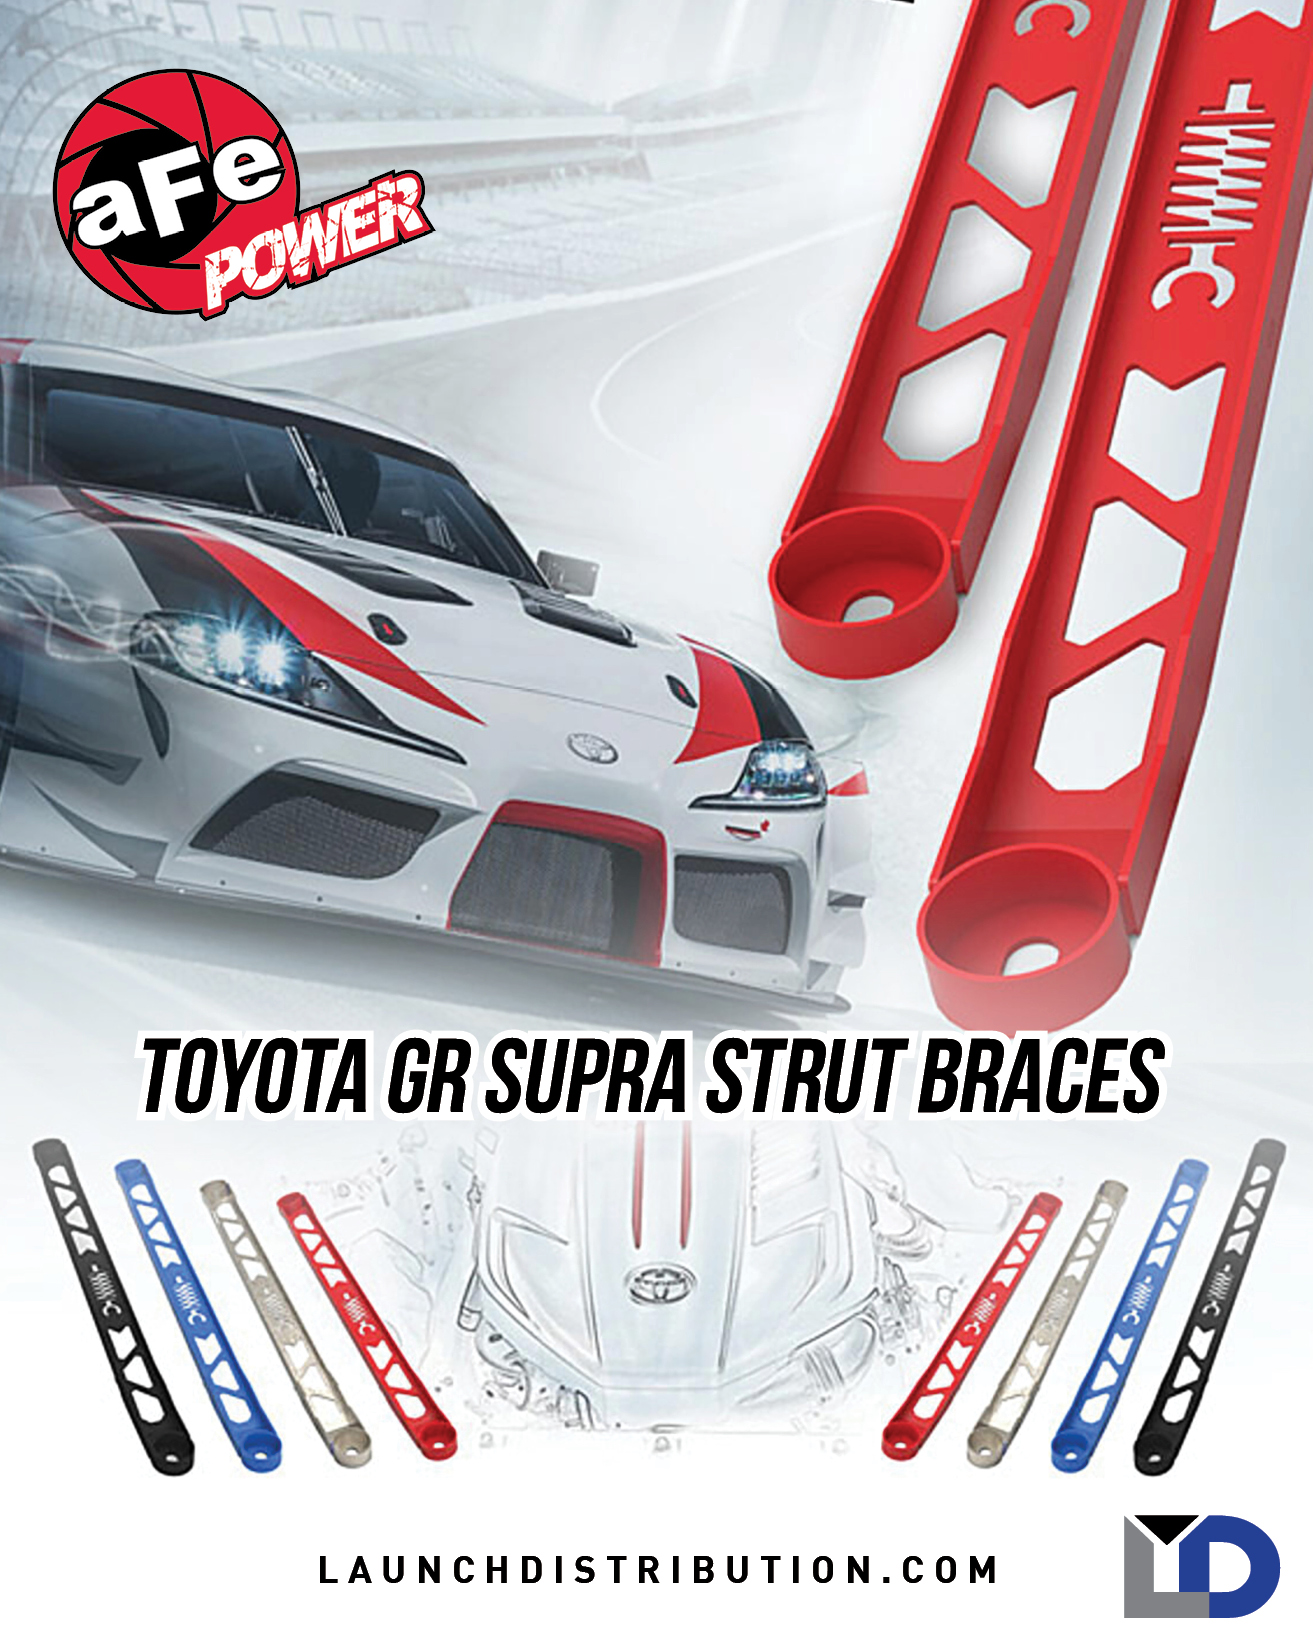 aFe Strut Braces for GR Supra!